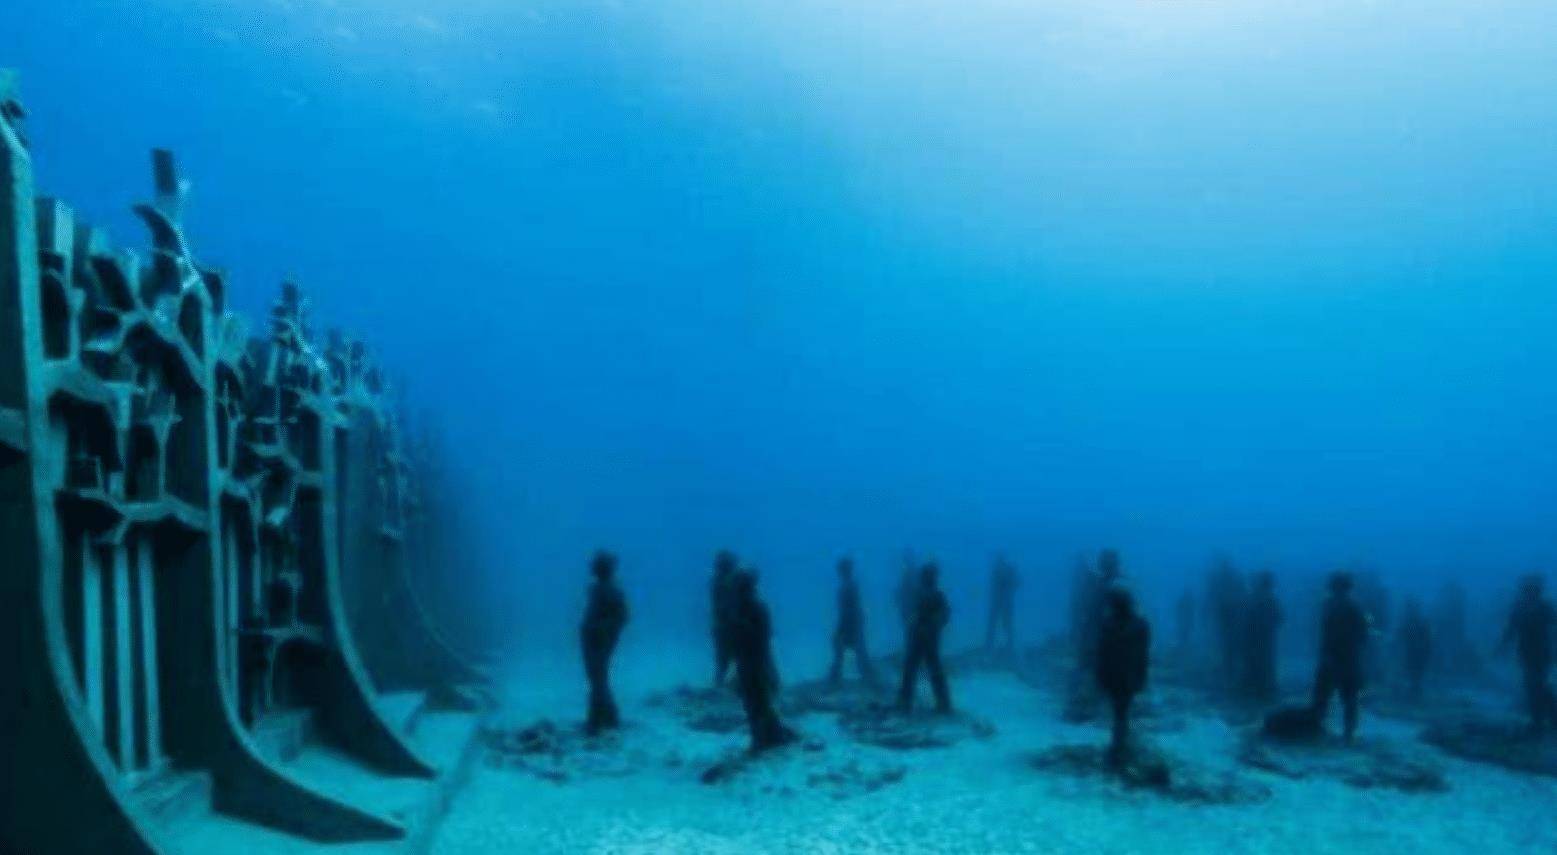 男子海底潜水时,在水底无意发现大量人群聚集,吓得连忙上岸